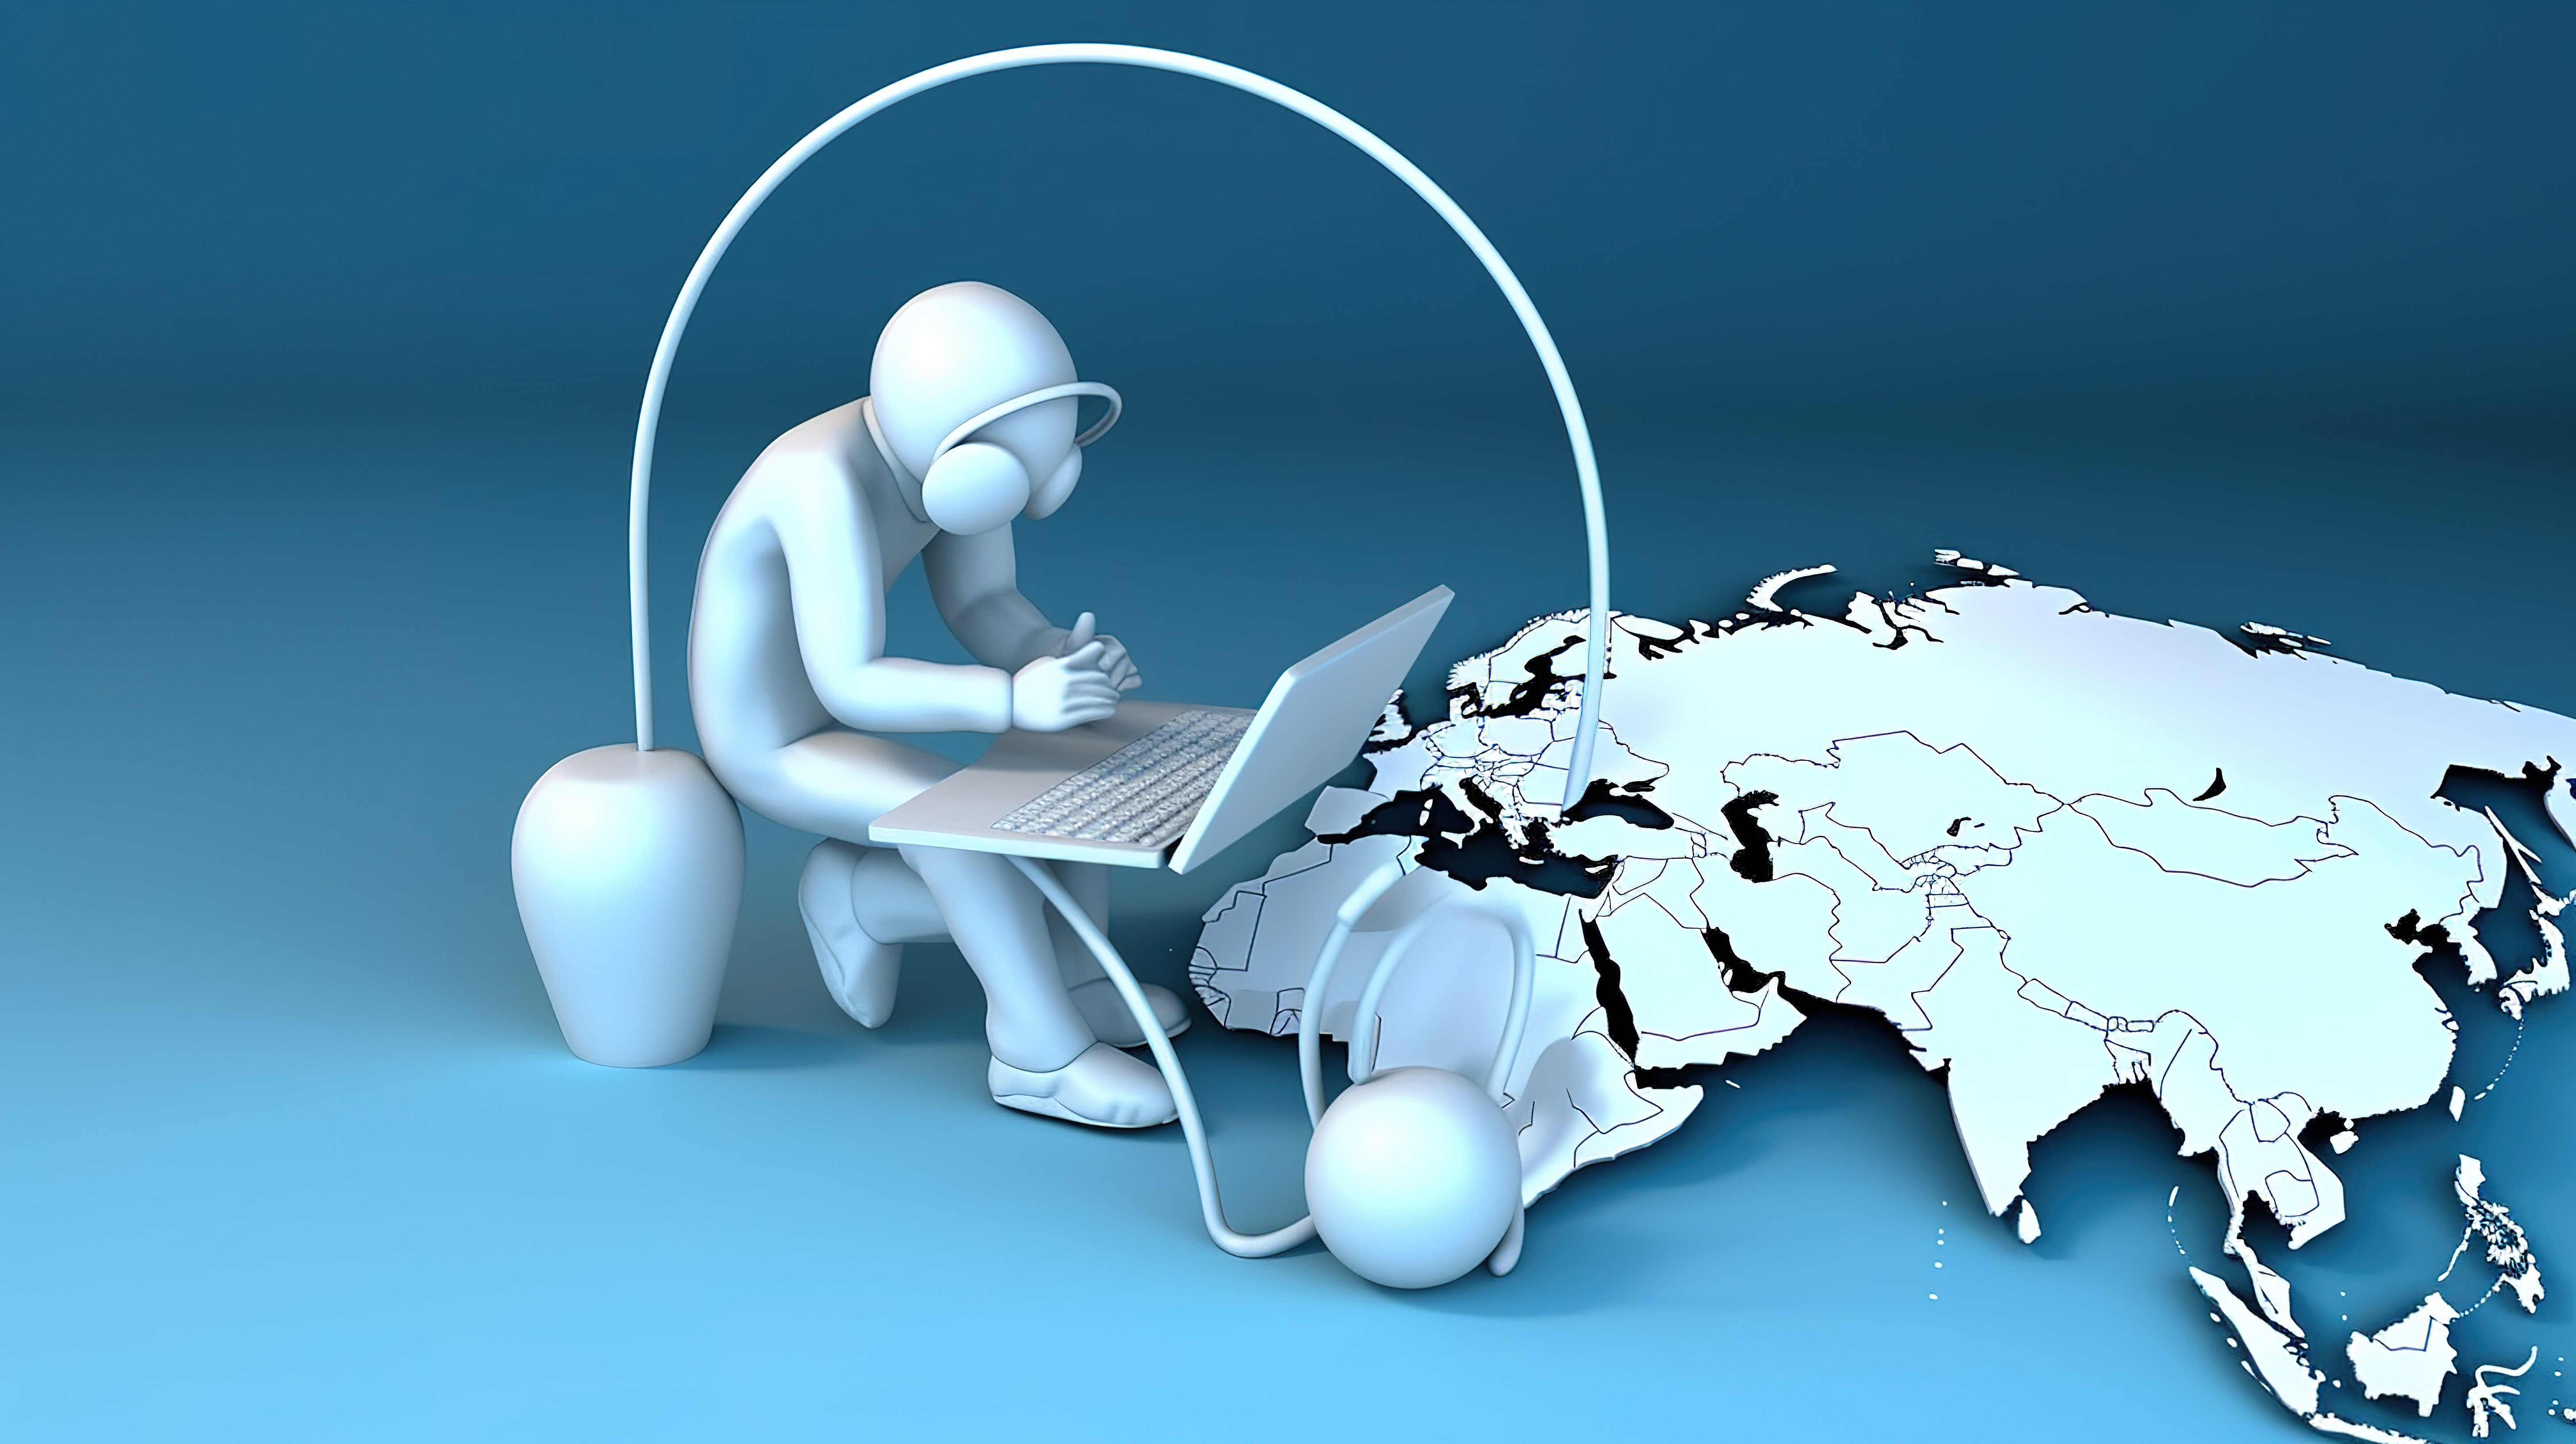 蓝色星球上戴着耳机和操作笔记本电脑的虚拟工作者白色 3D 人物图片